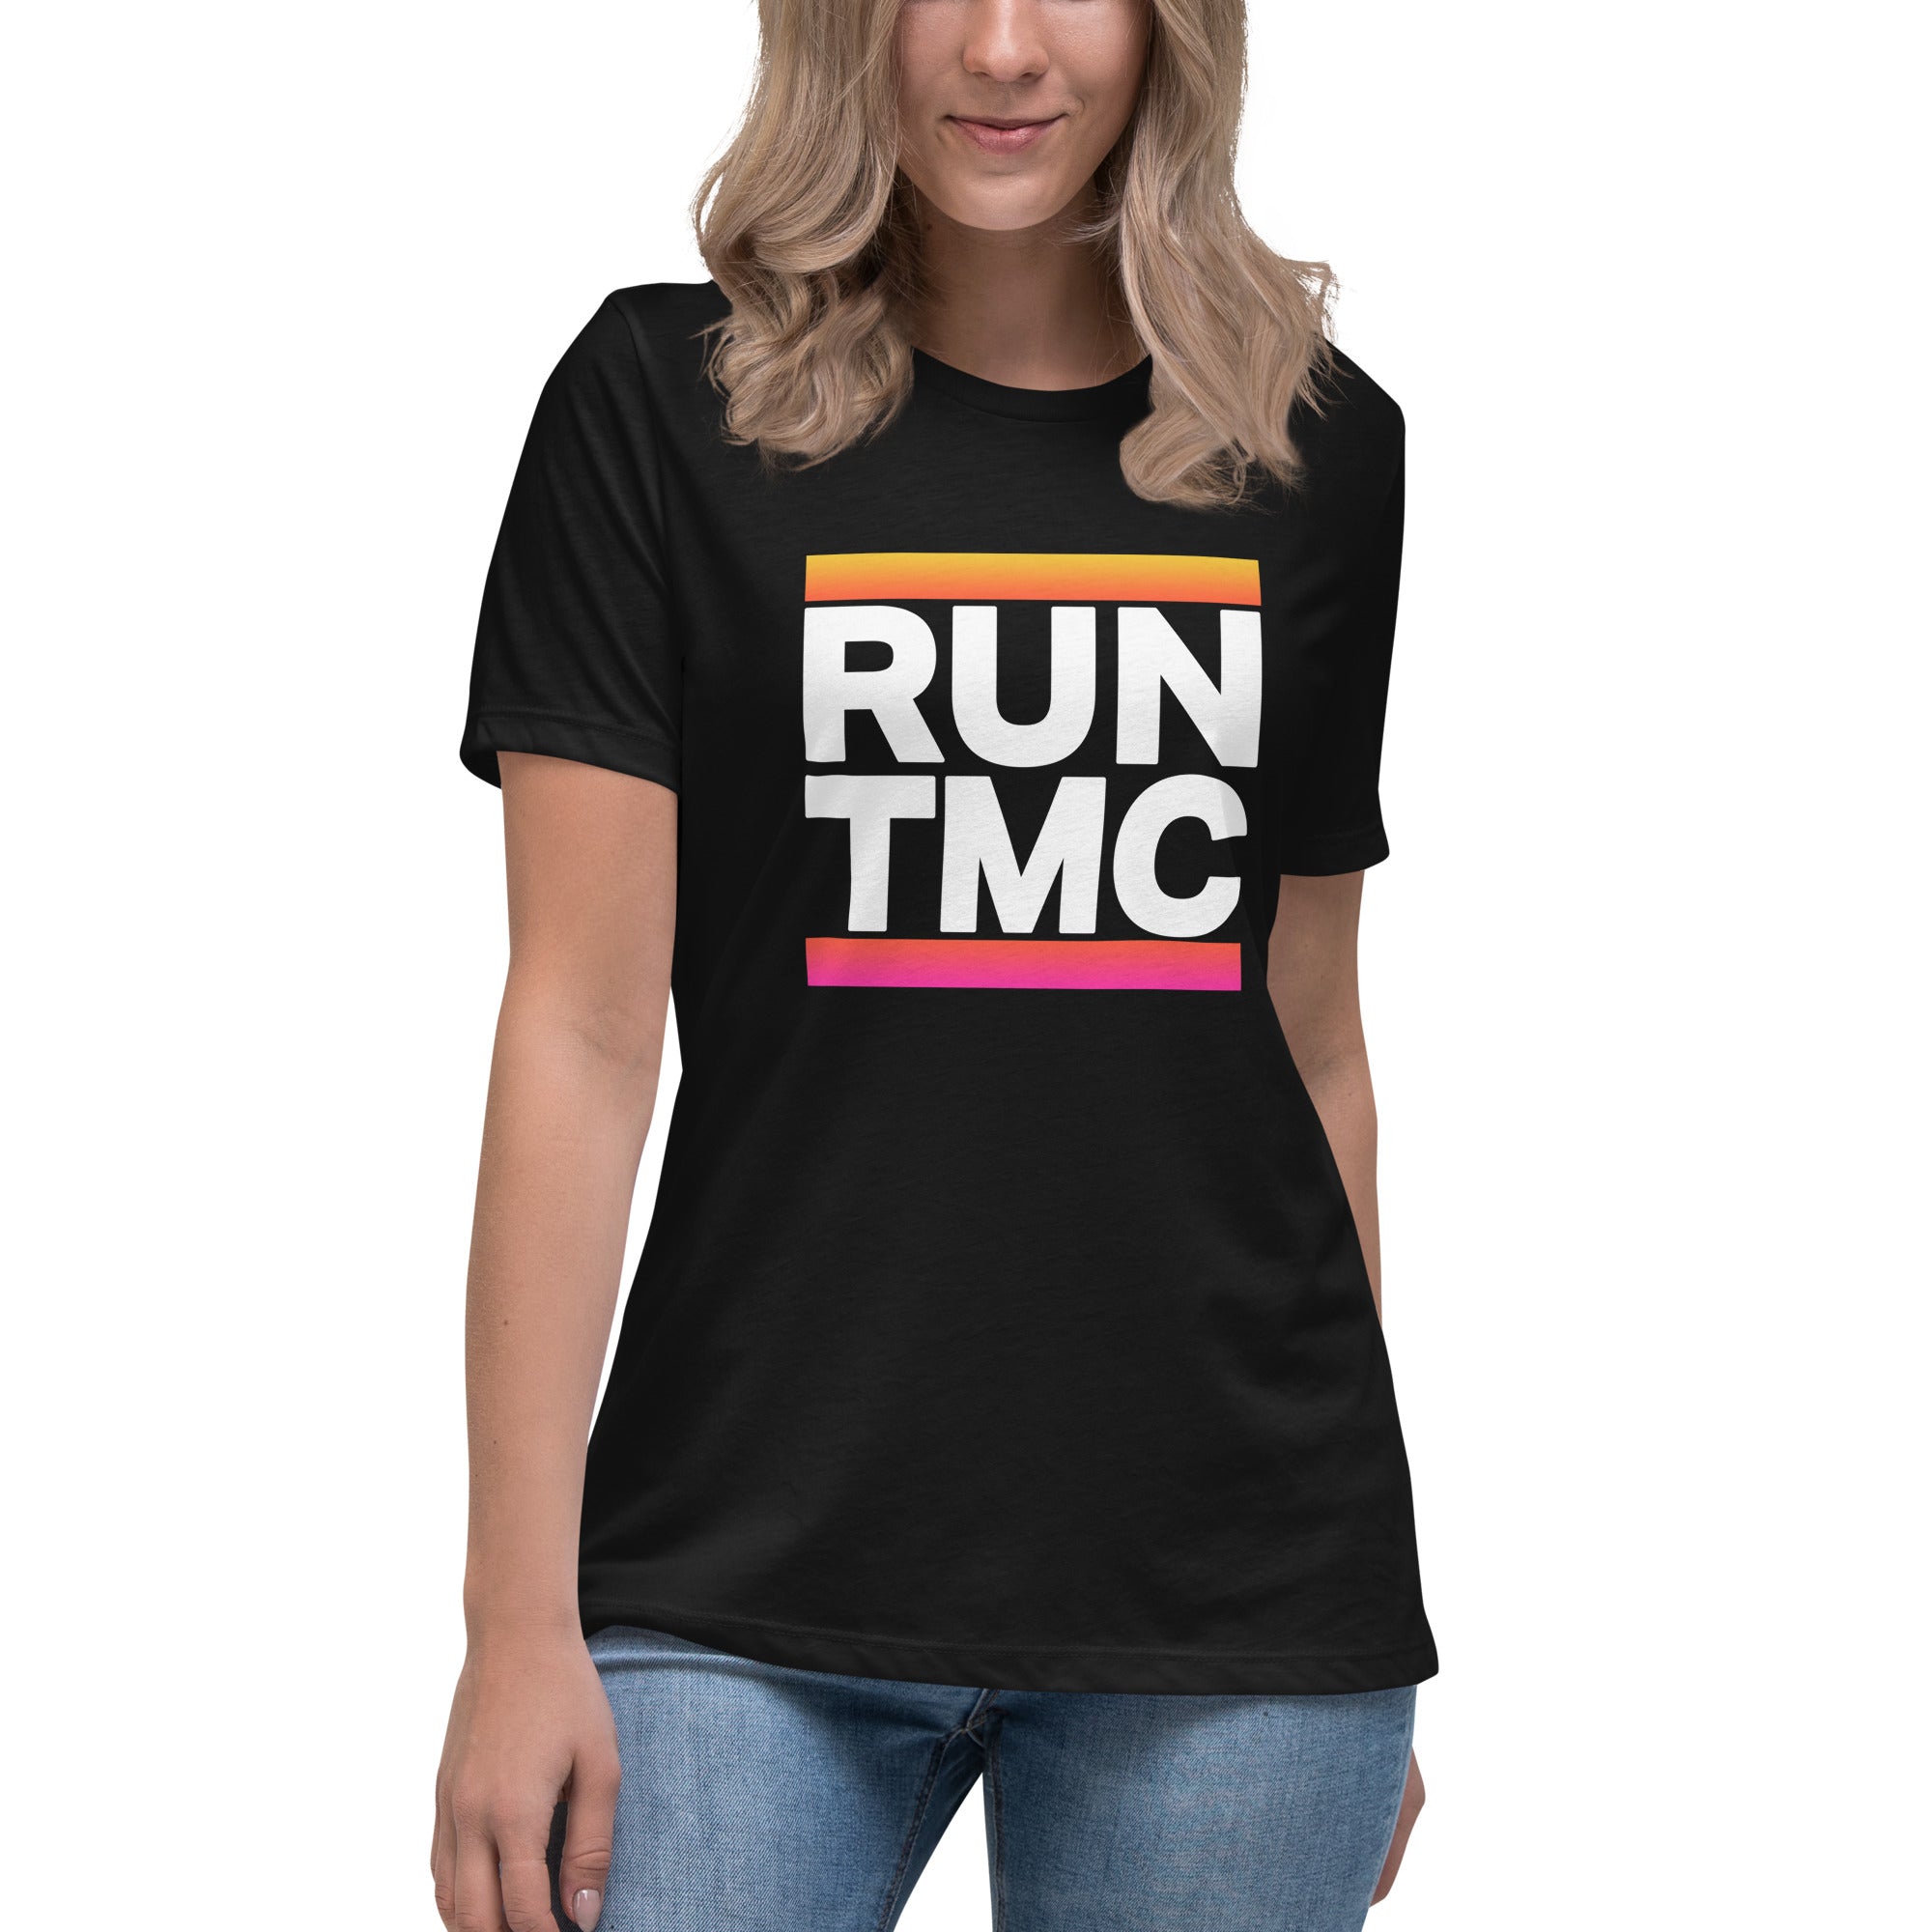 RUN TMC Women's Relaxed T-Shirt